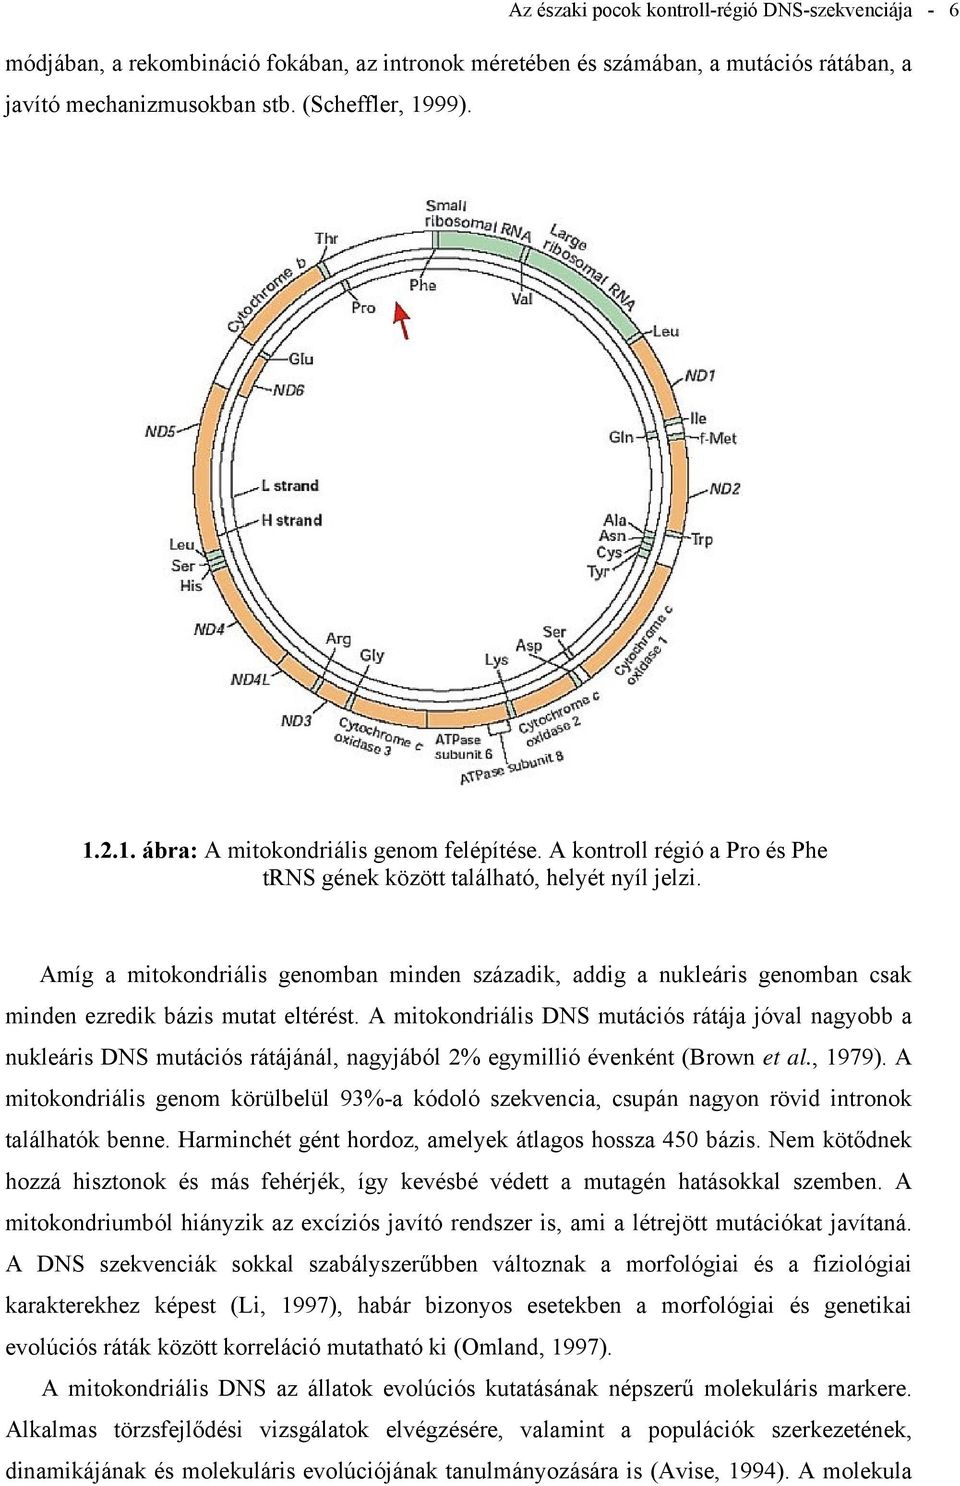 Amíg a mitokondriális genomban minden századik, addig a nukleáris genomban csak minden ezredik bázis mutat eltérést.